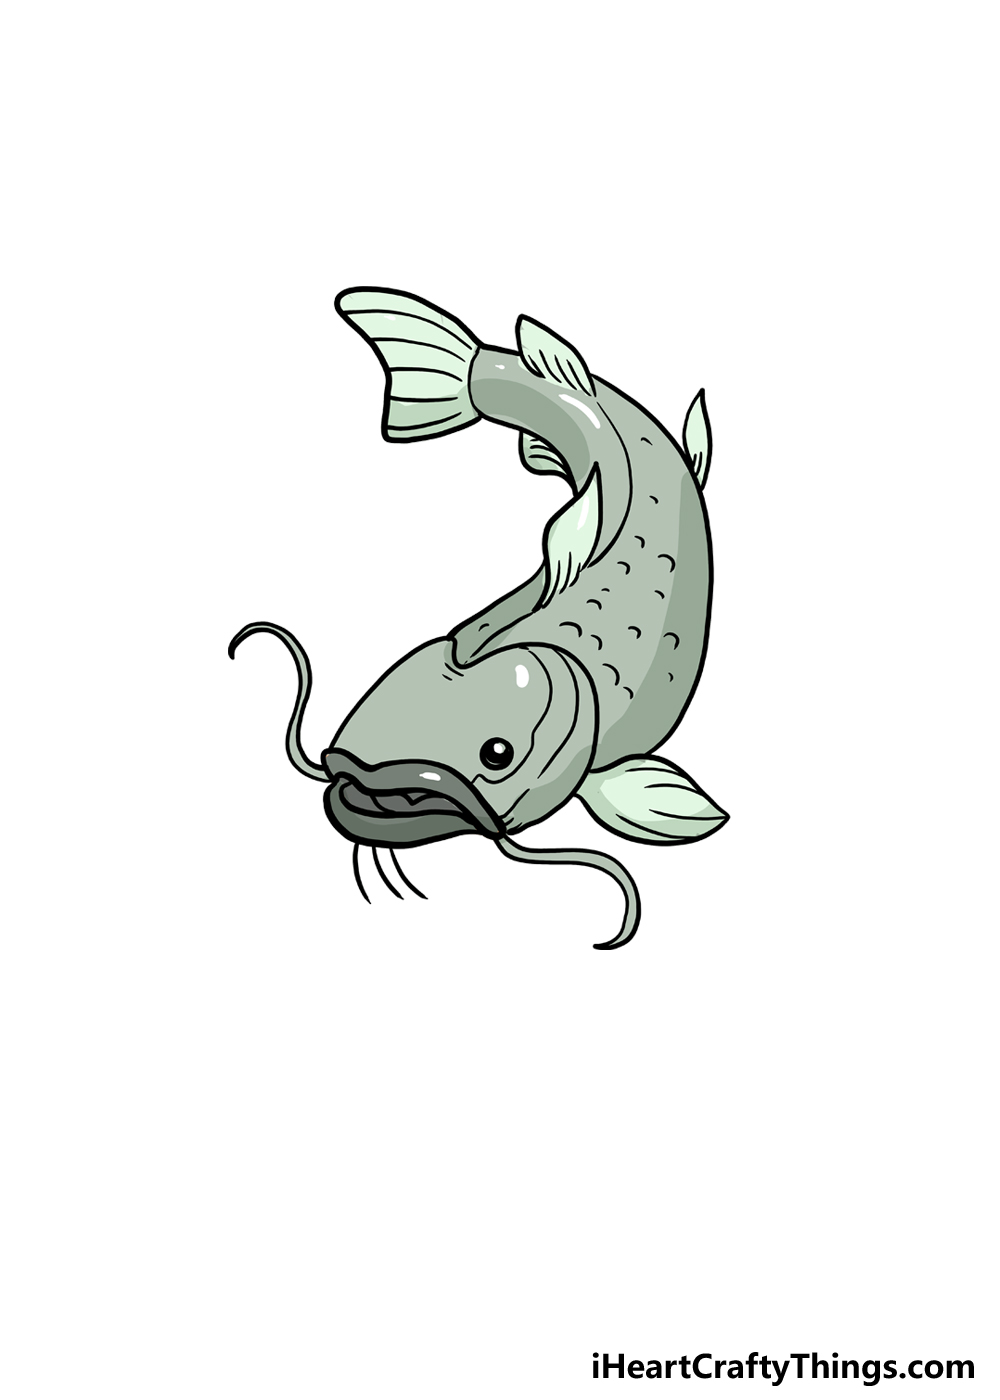 Cá Trê Hình minh họa Sẵn có  Tải xuống Hình ảnh Ngay bây giờ  Biển Bộ cá  da trơn Bức tranh  Sản phẩm nghệ thuật  iStock